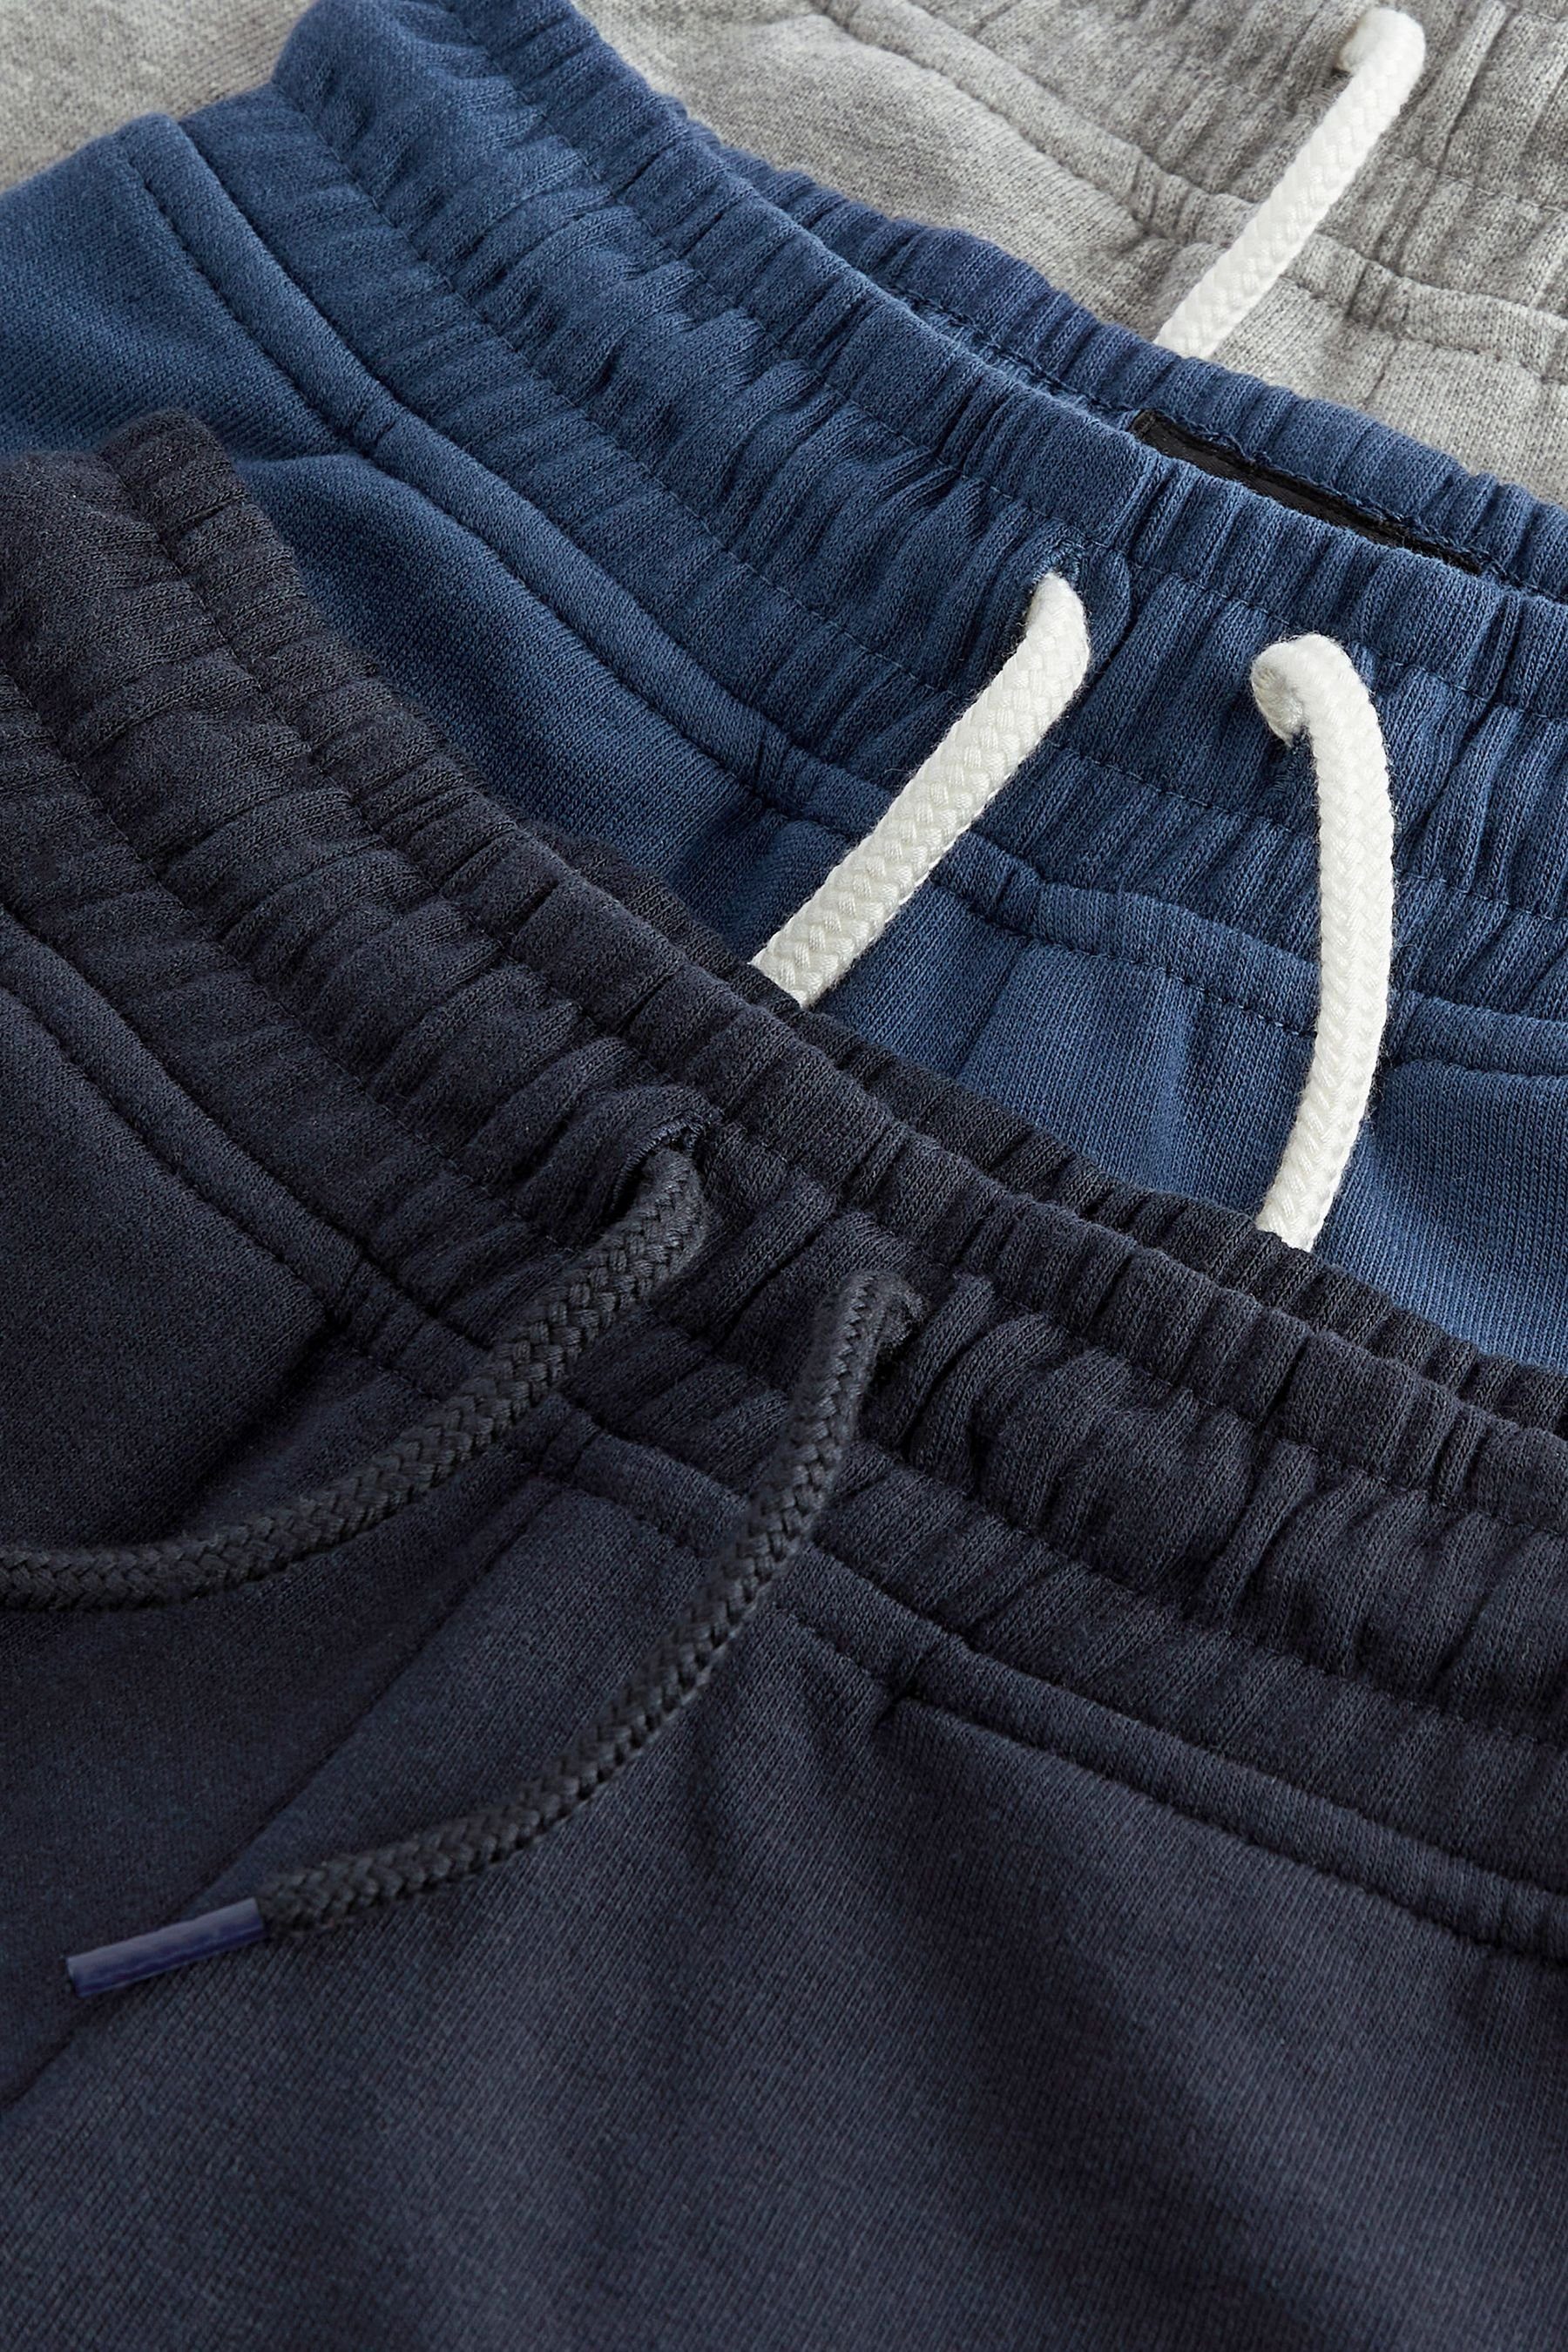 Next (3-tlg) Jersey-Shorts, Navy/Grey/Blue Sweatshorts 3er-Pack Basic